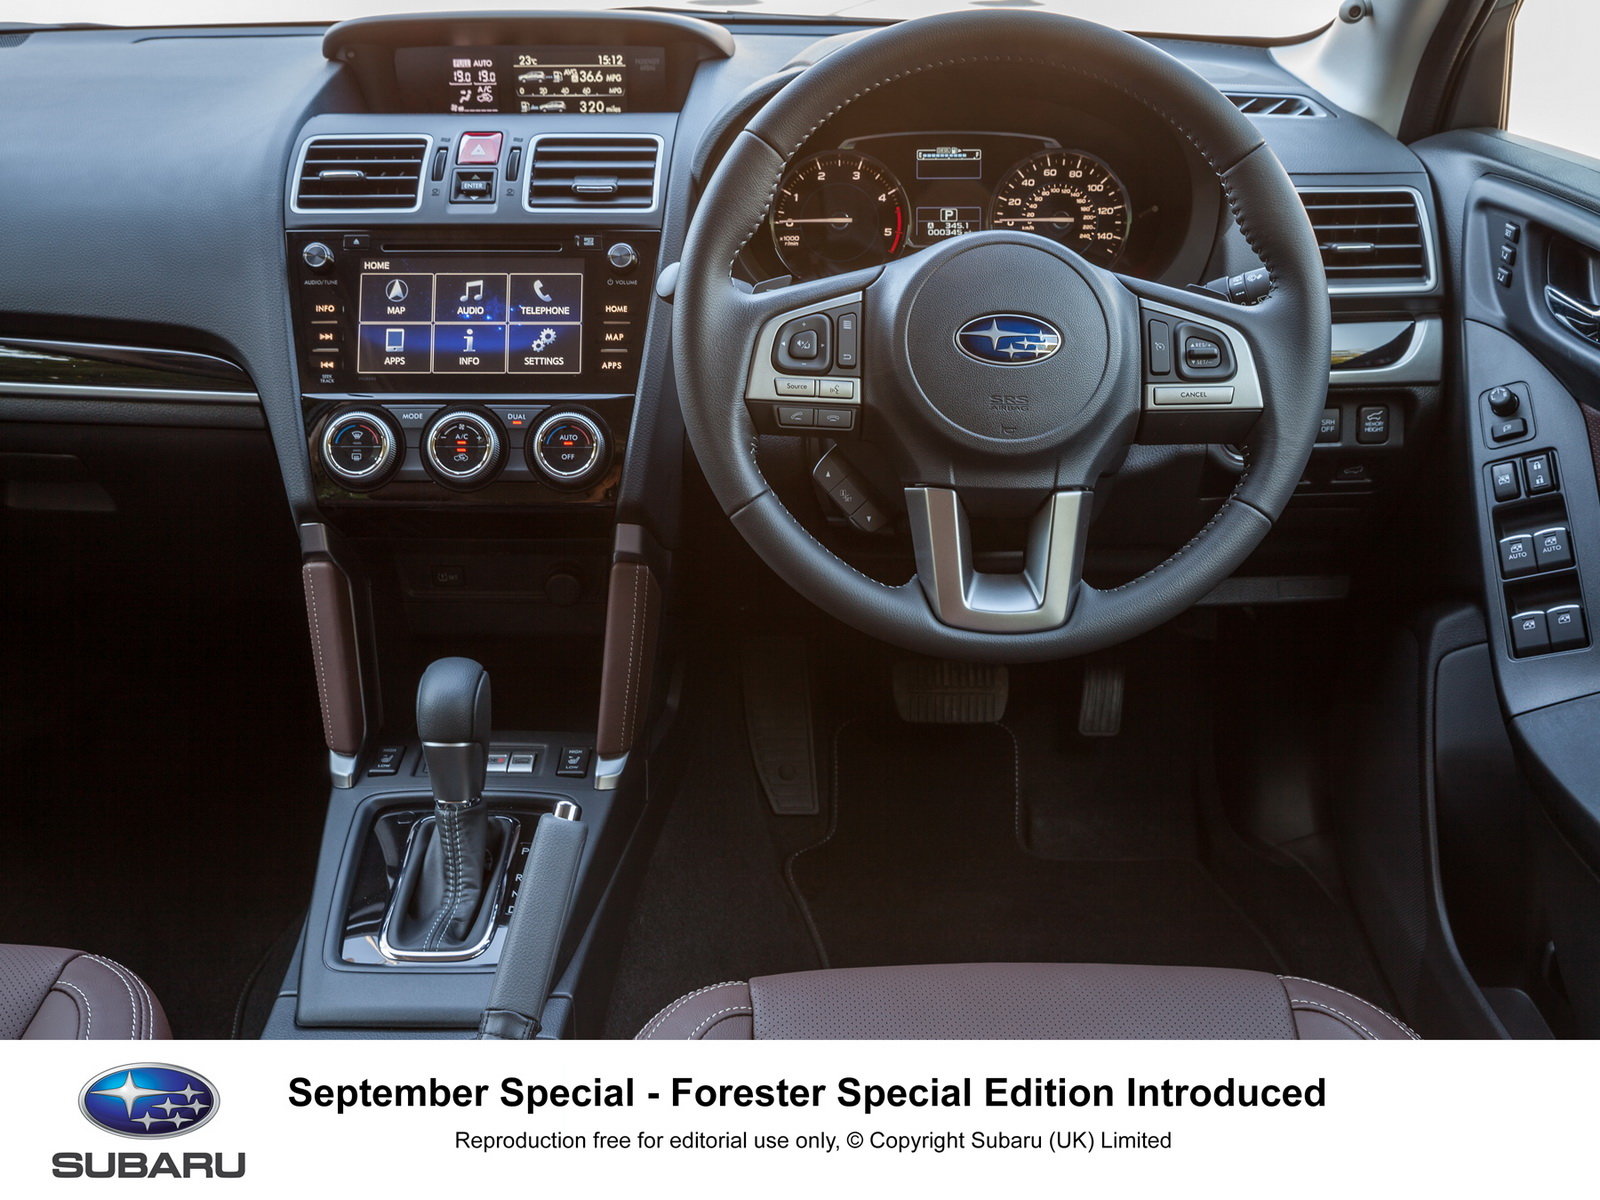 Subaru Forester v nové speciální edici pro myslivce